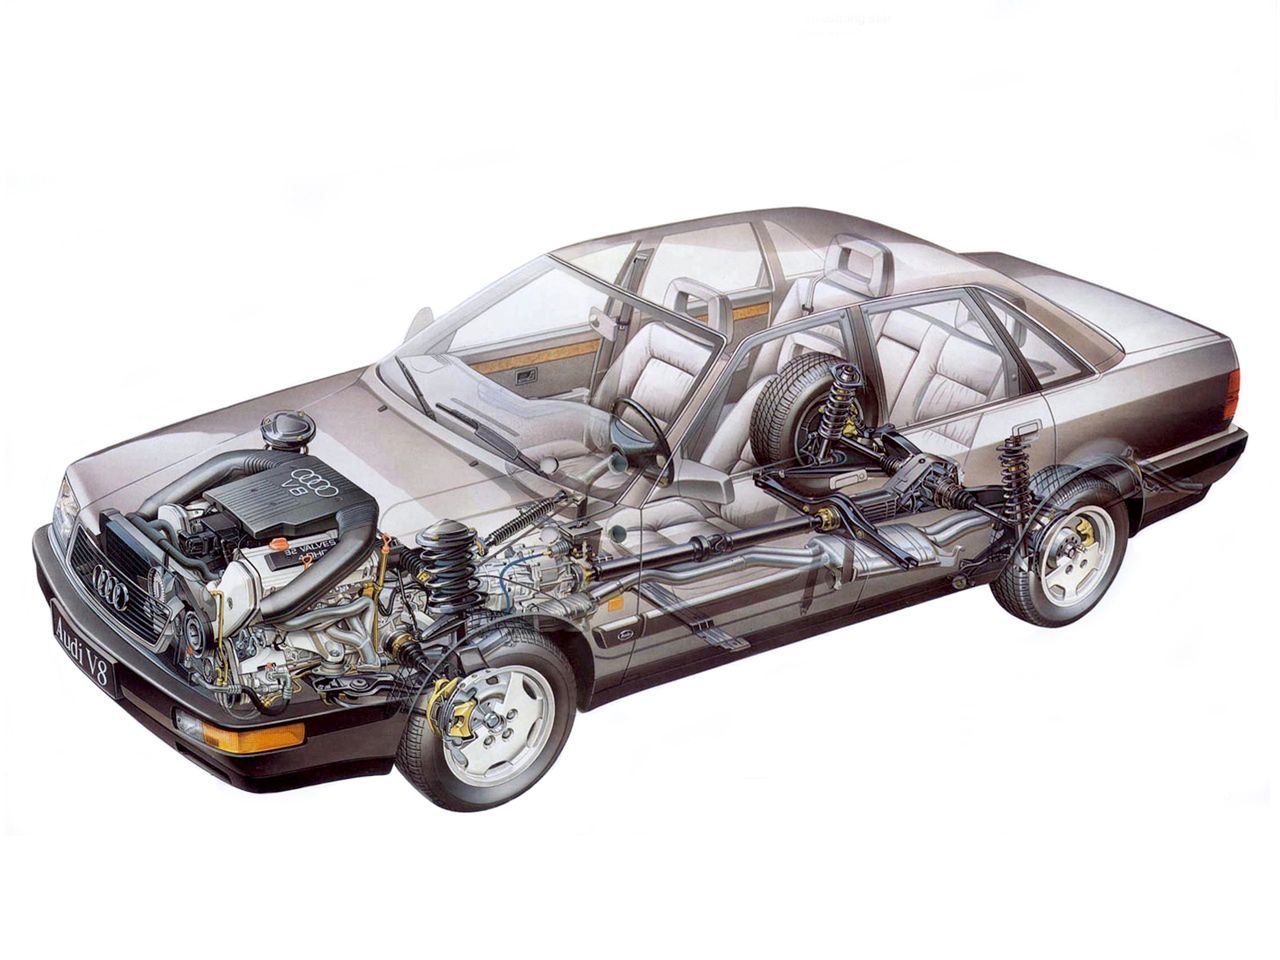 Audi V8 miało w swoim czasie bodaj najbardziej zaawansowany napęd na cztery koła